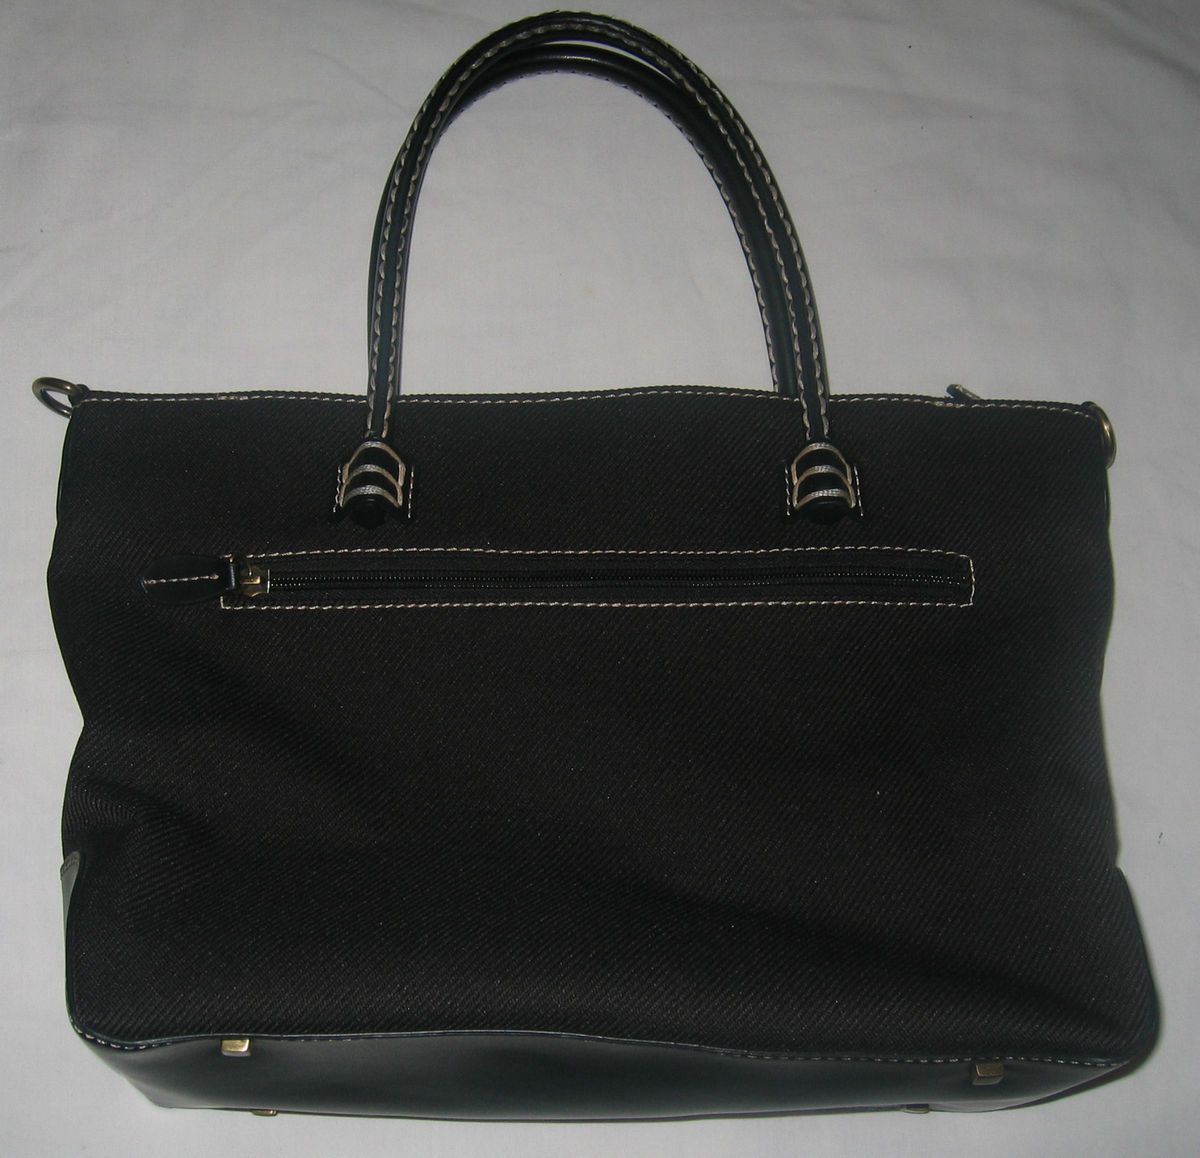 ETIENNE AIGNER BLACK canvas handbag purse looks totally unused